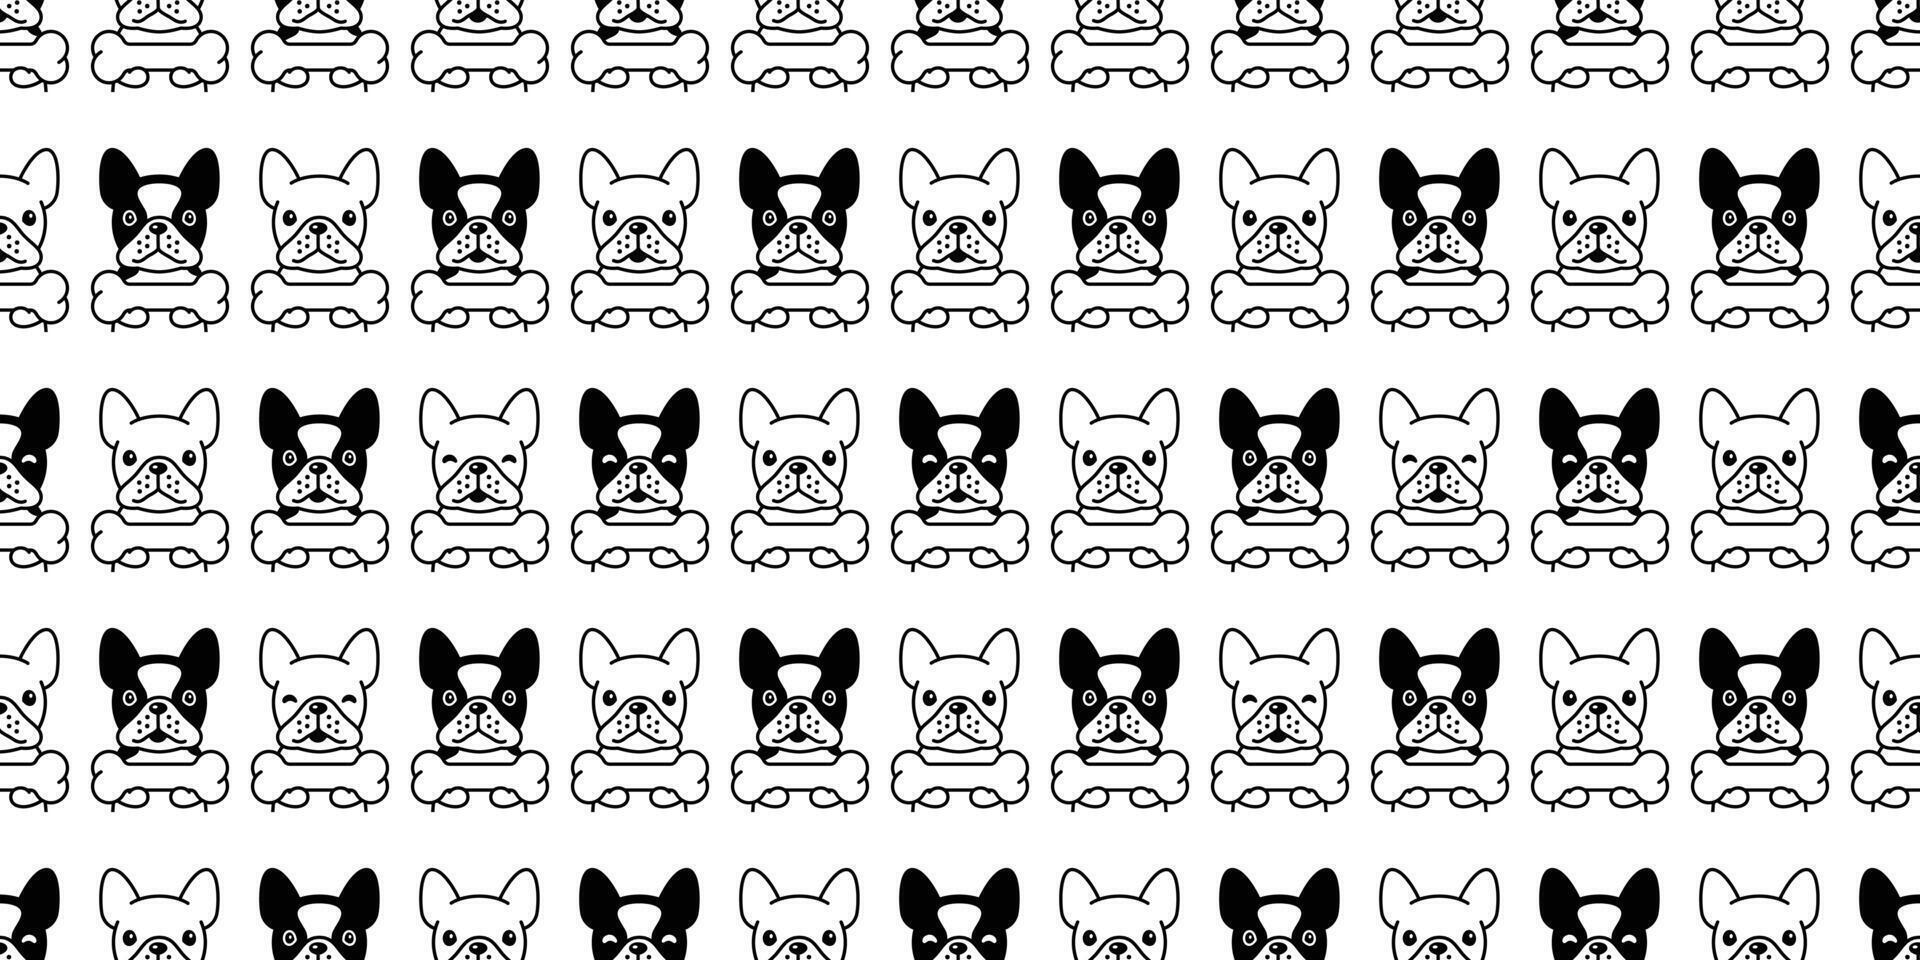 hond naadloos patroon Frans bulldog vector bot huisdier puppy dier sjaal geïsoleerd herhaling behang tegel achtergrond tekenfilm illustratie tekening zwart wit ontwerp